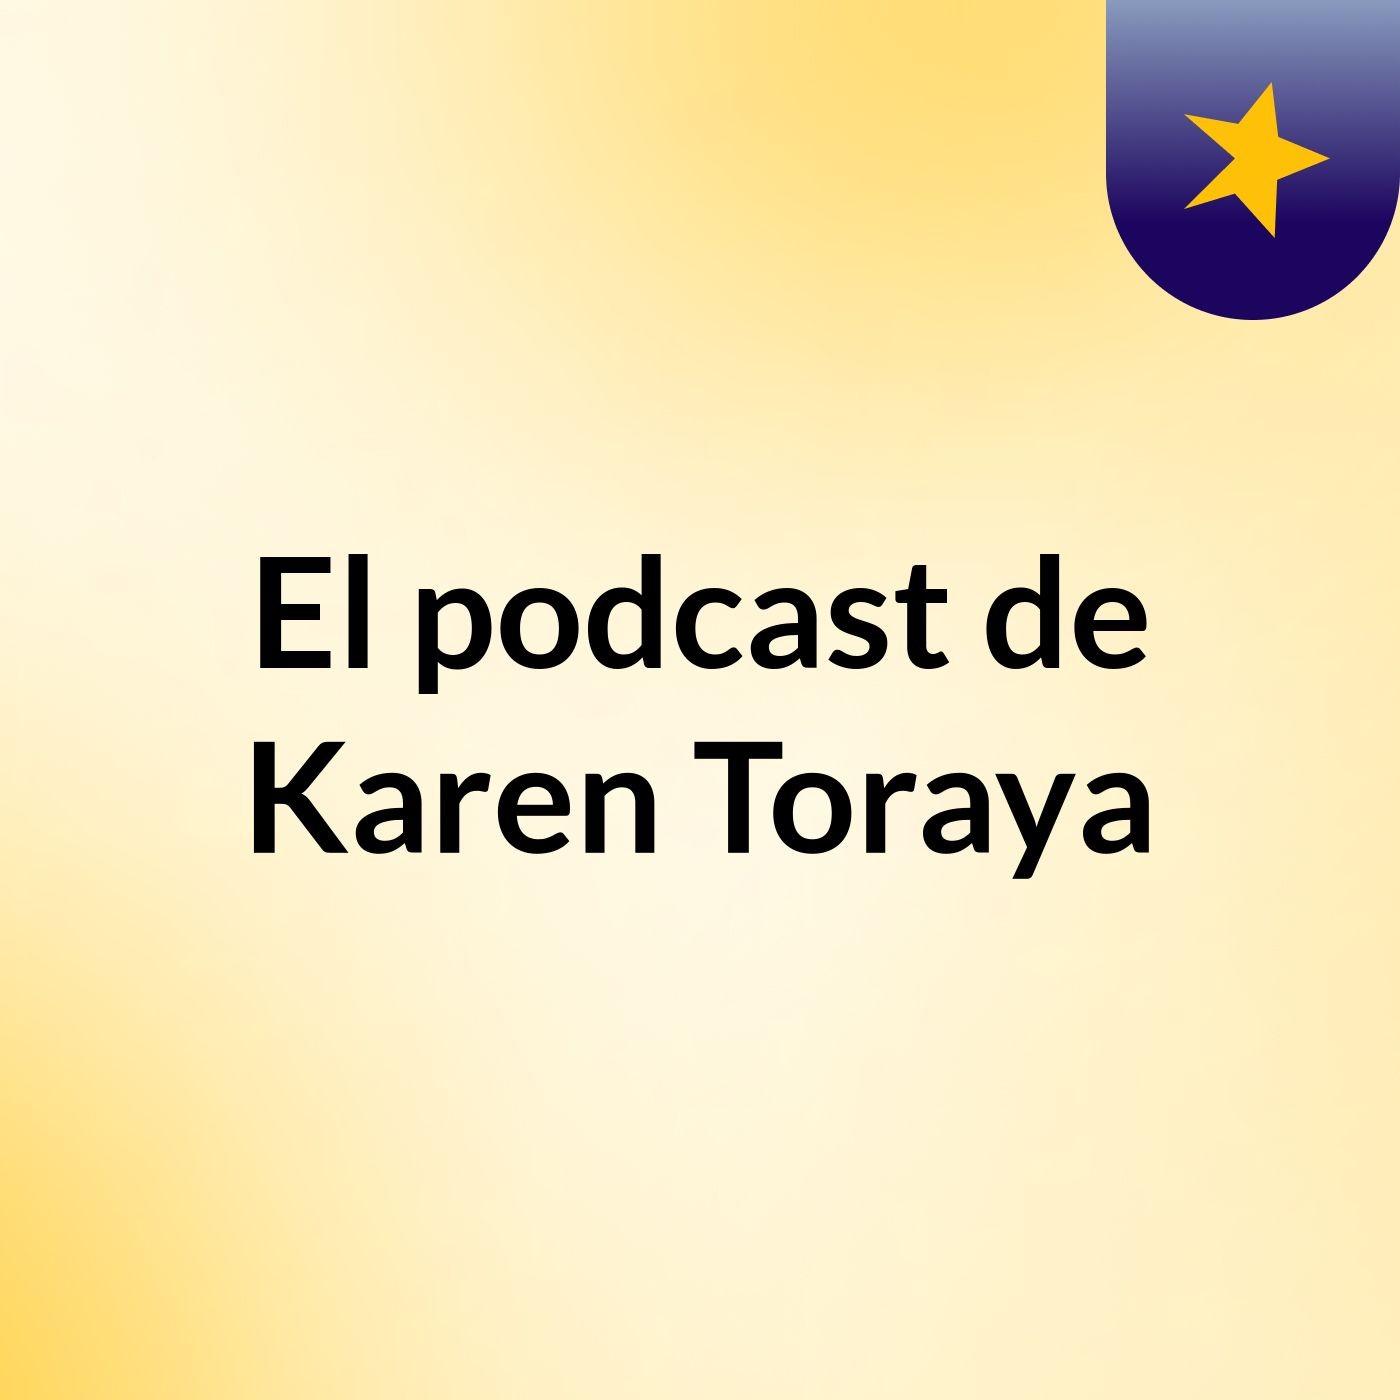 Episodio 4 - El podcast de Karen Toraya